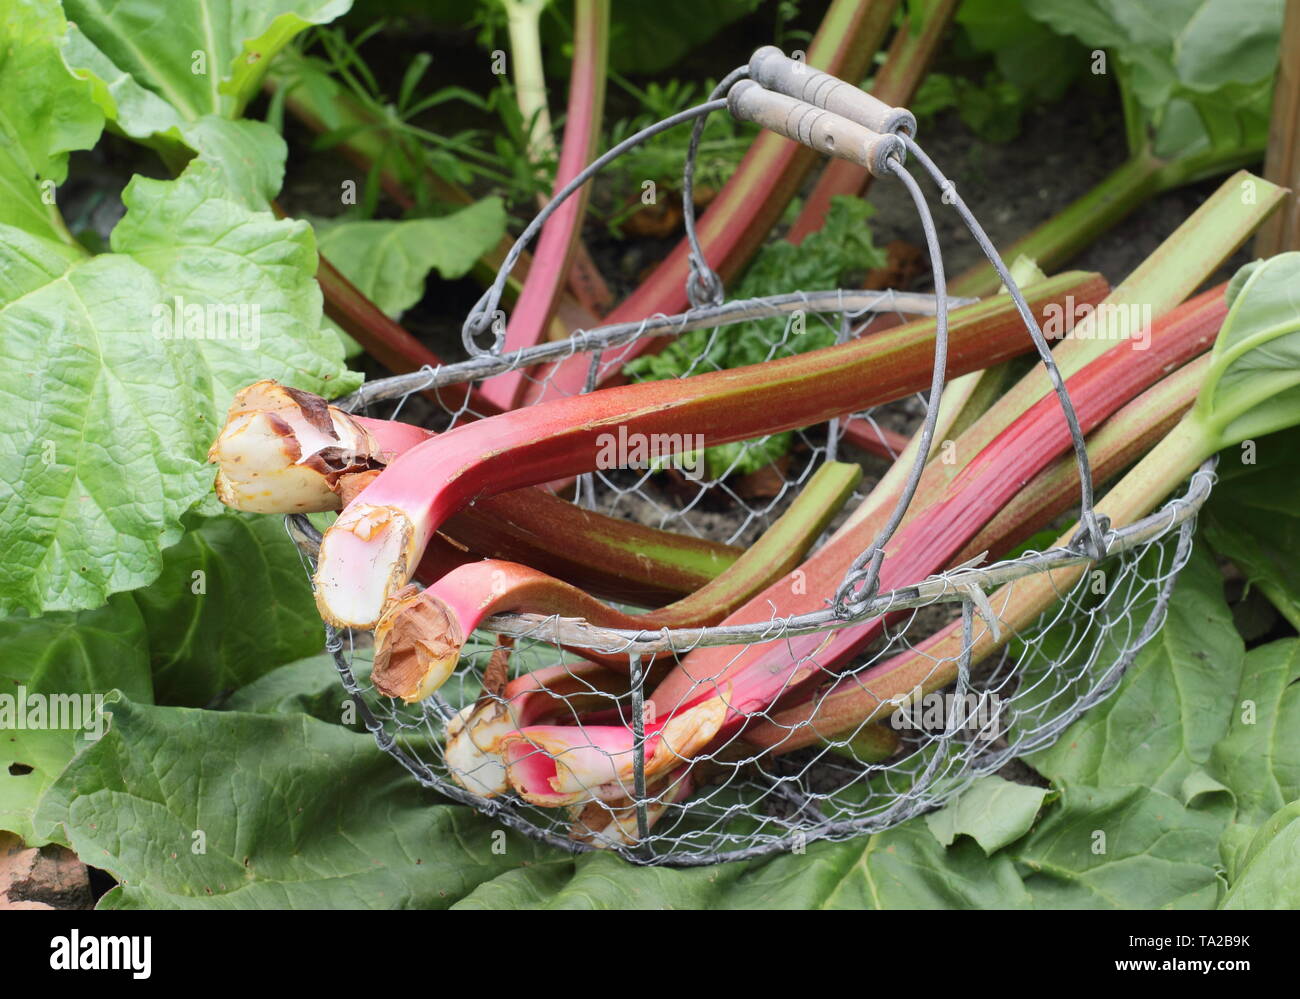 Rheum rhabarbarum. Frisch geerntete Rhabarber in einem Drahtkorb-UK Garten Stockfoto